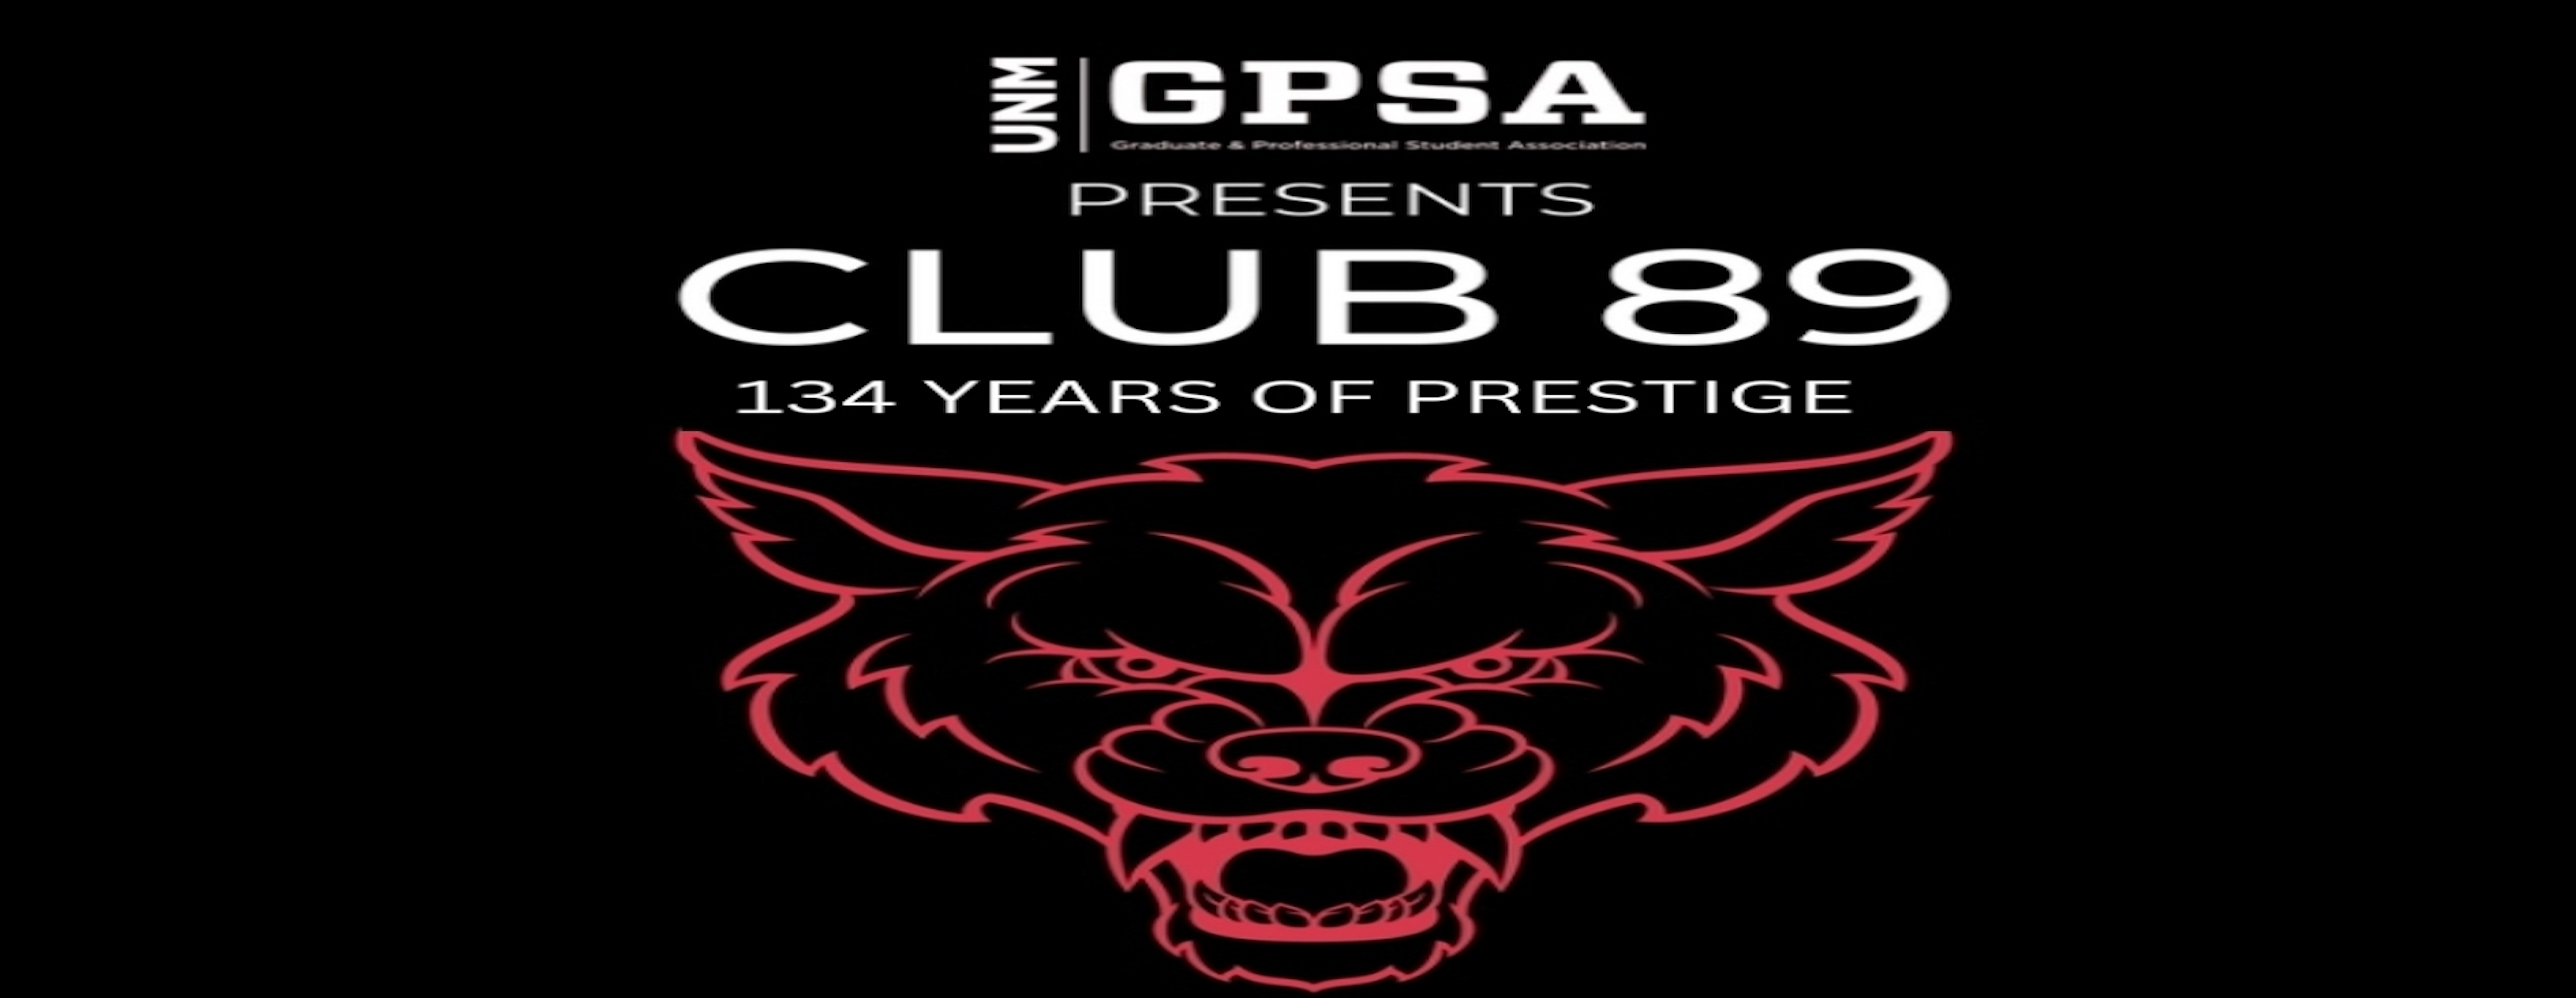 GPSA's Club 89